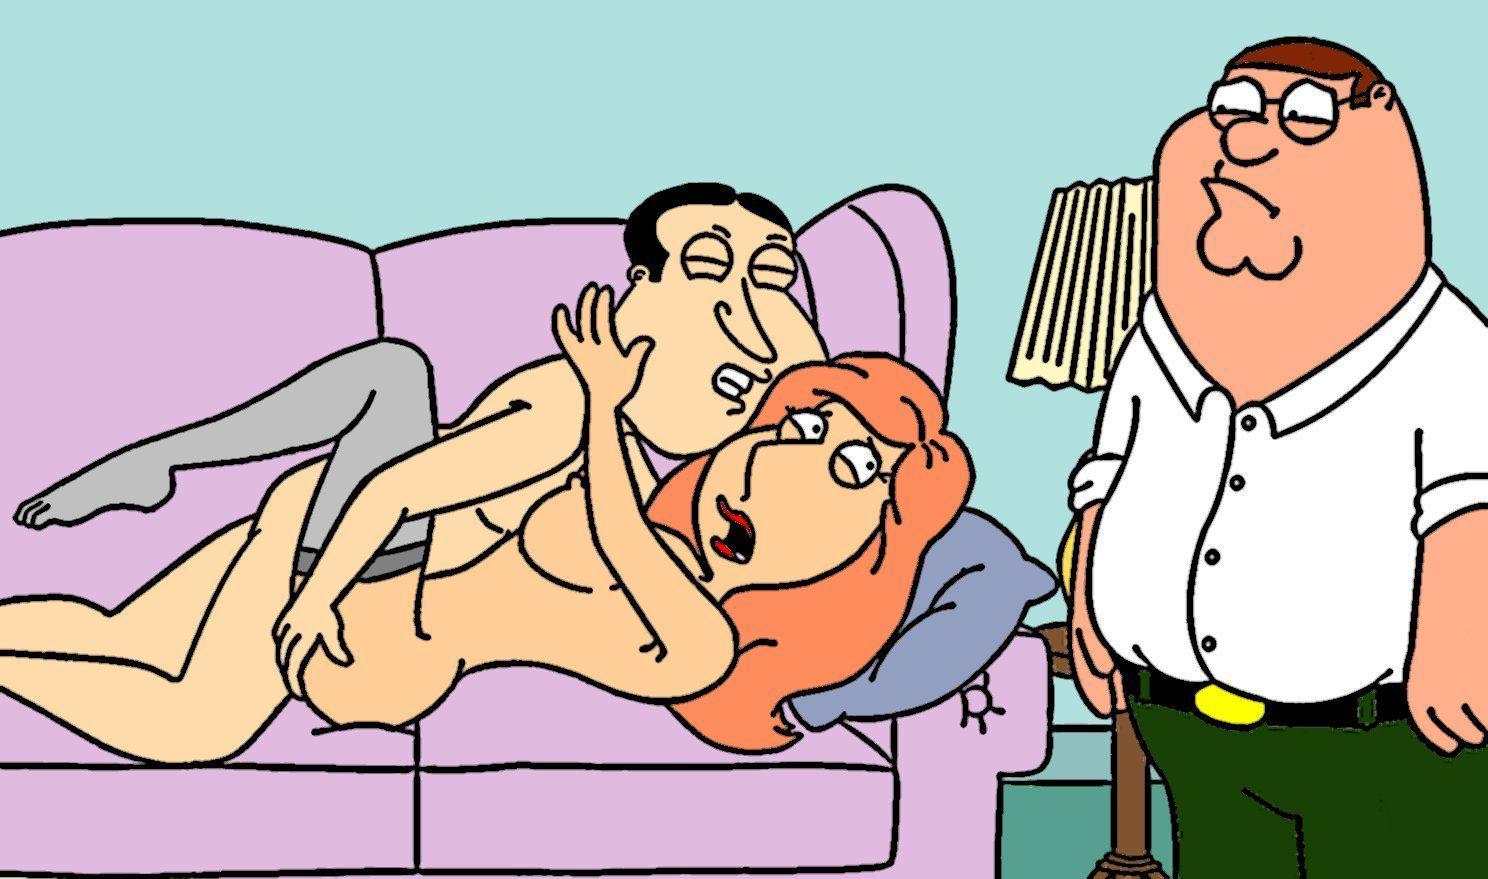 Lois Blowjob - Lois griffin having sex with quagmire porn . 